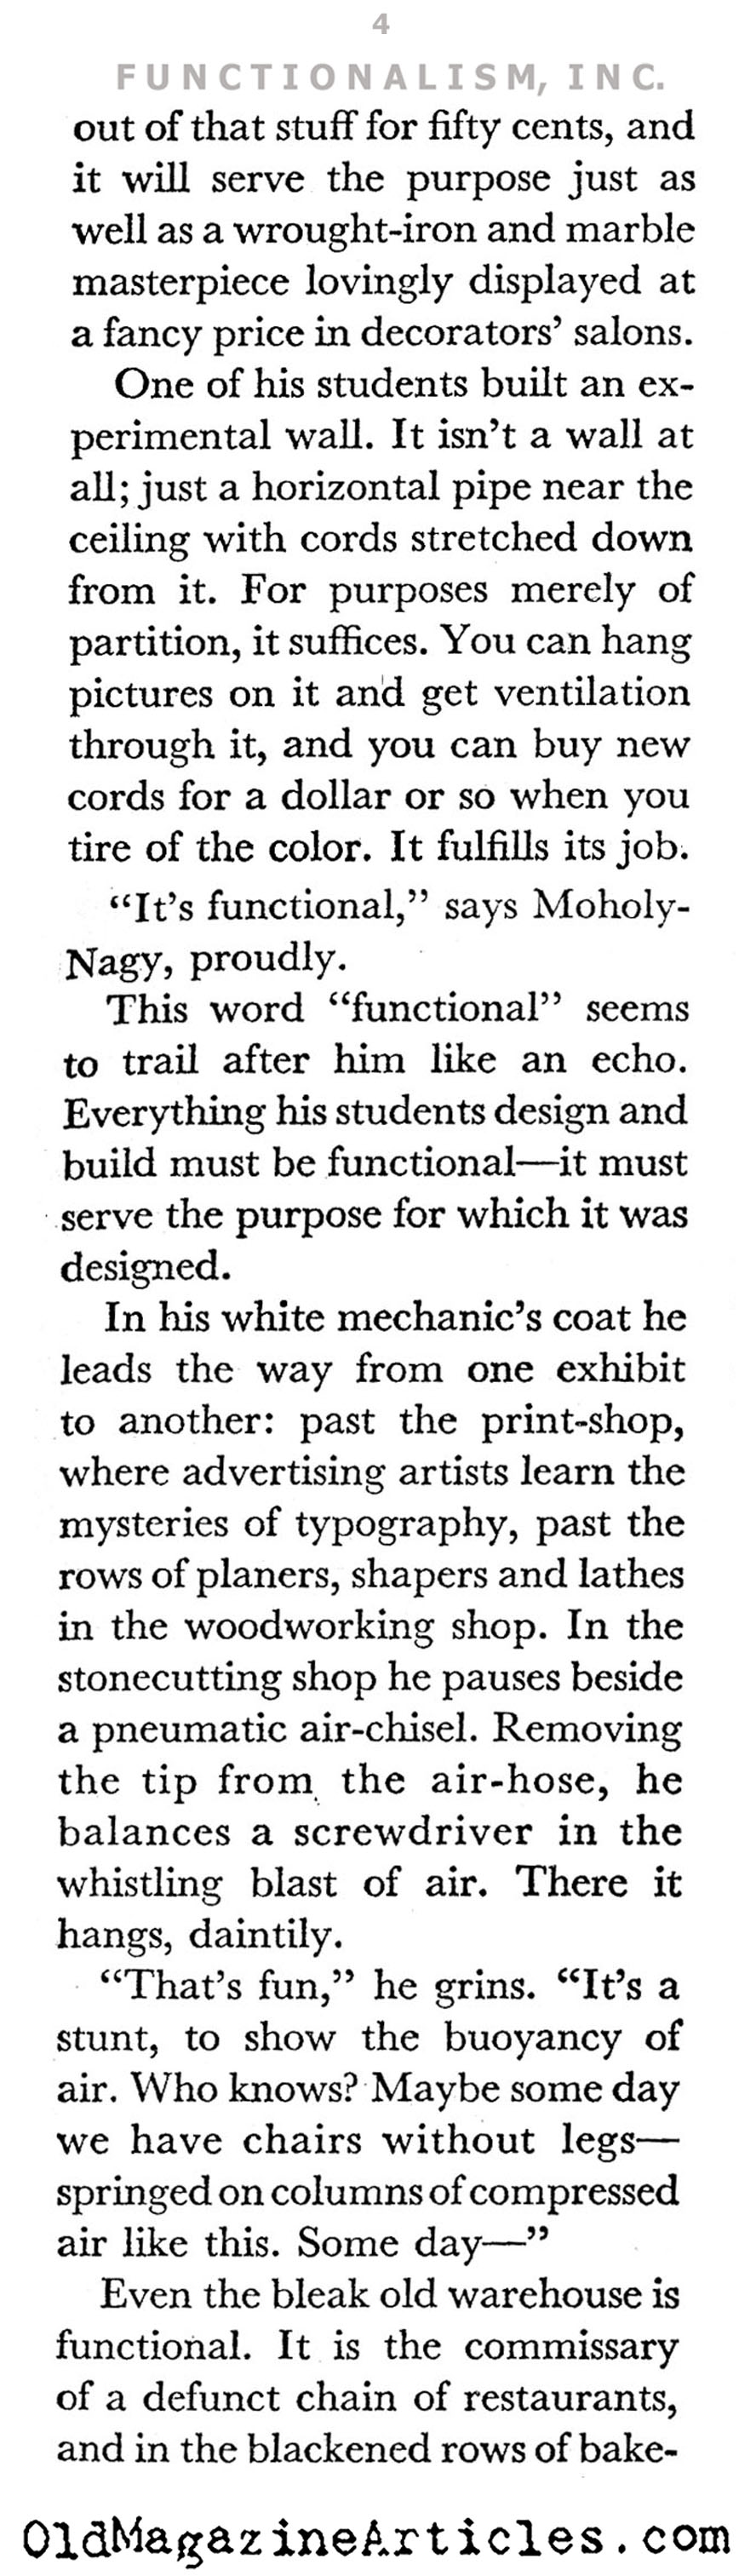 Moholy-Nagy and the New Bauhaus (Coronet Magazine, 1941)